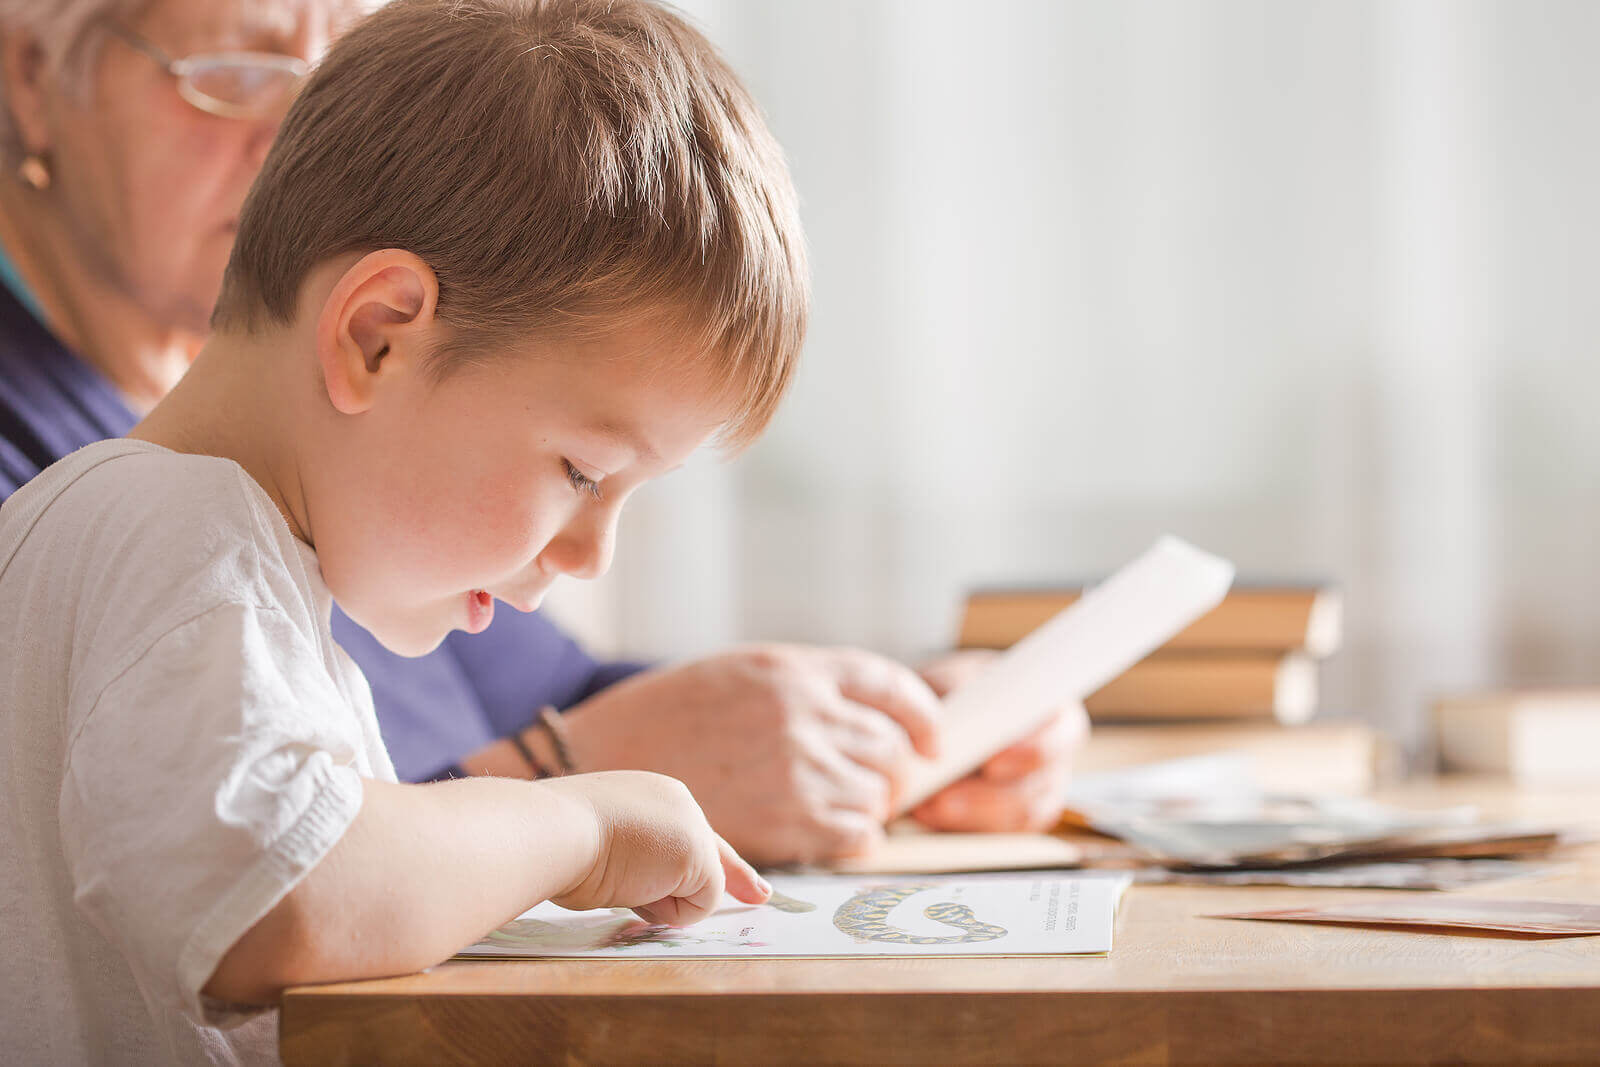 6 menetelmää, joiden avulla opettaa lasta lukemaan ja kirjoittamaan